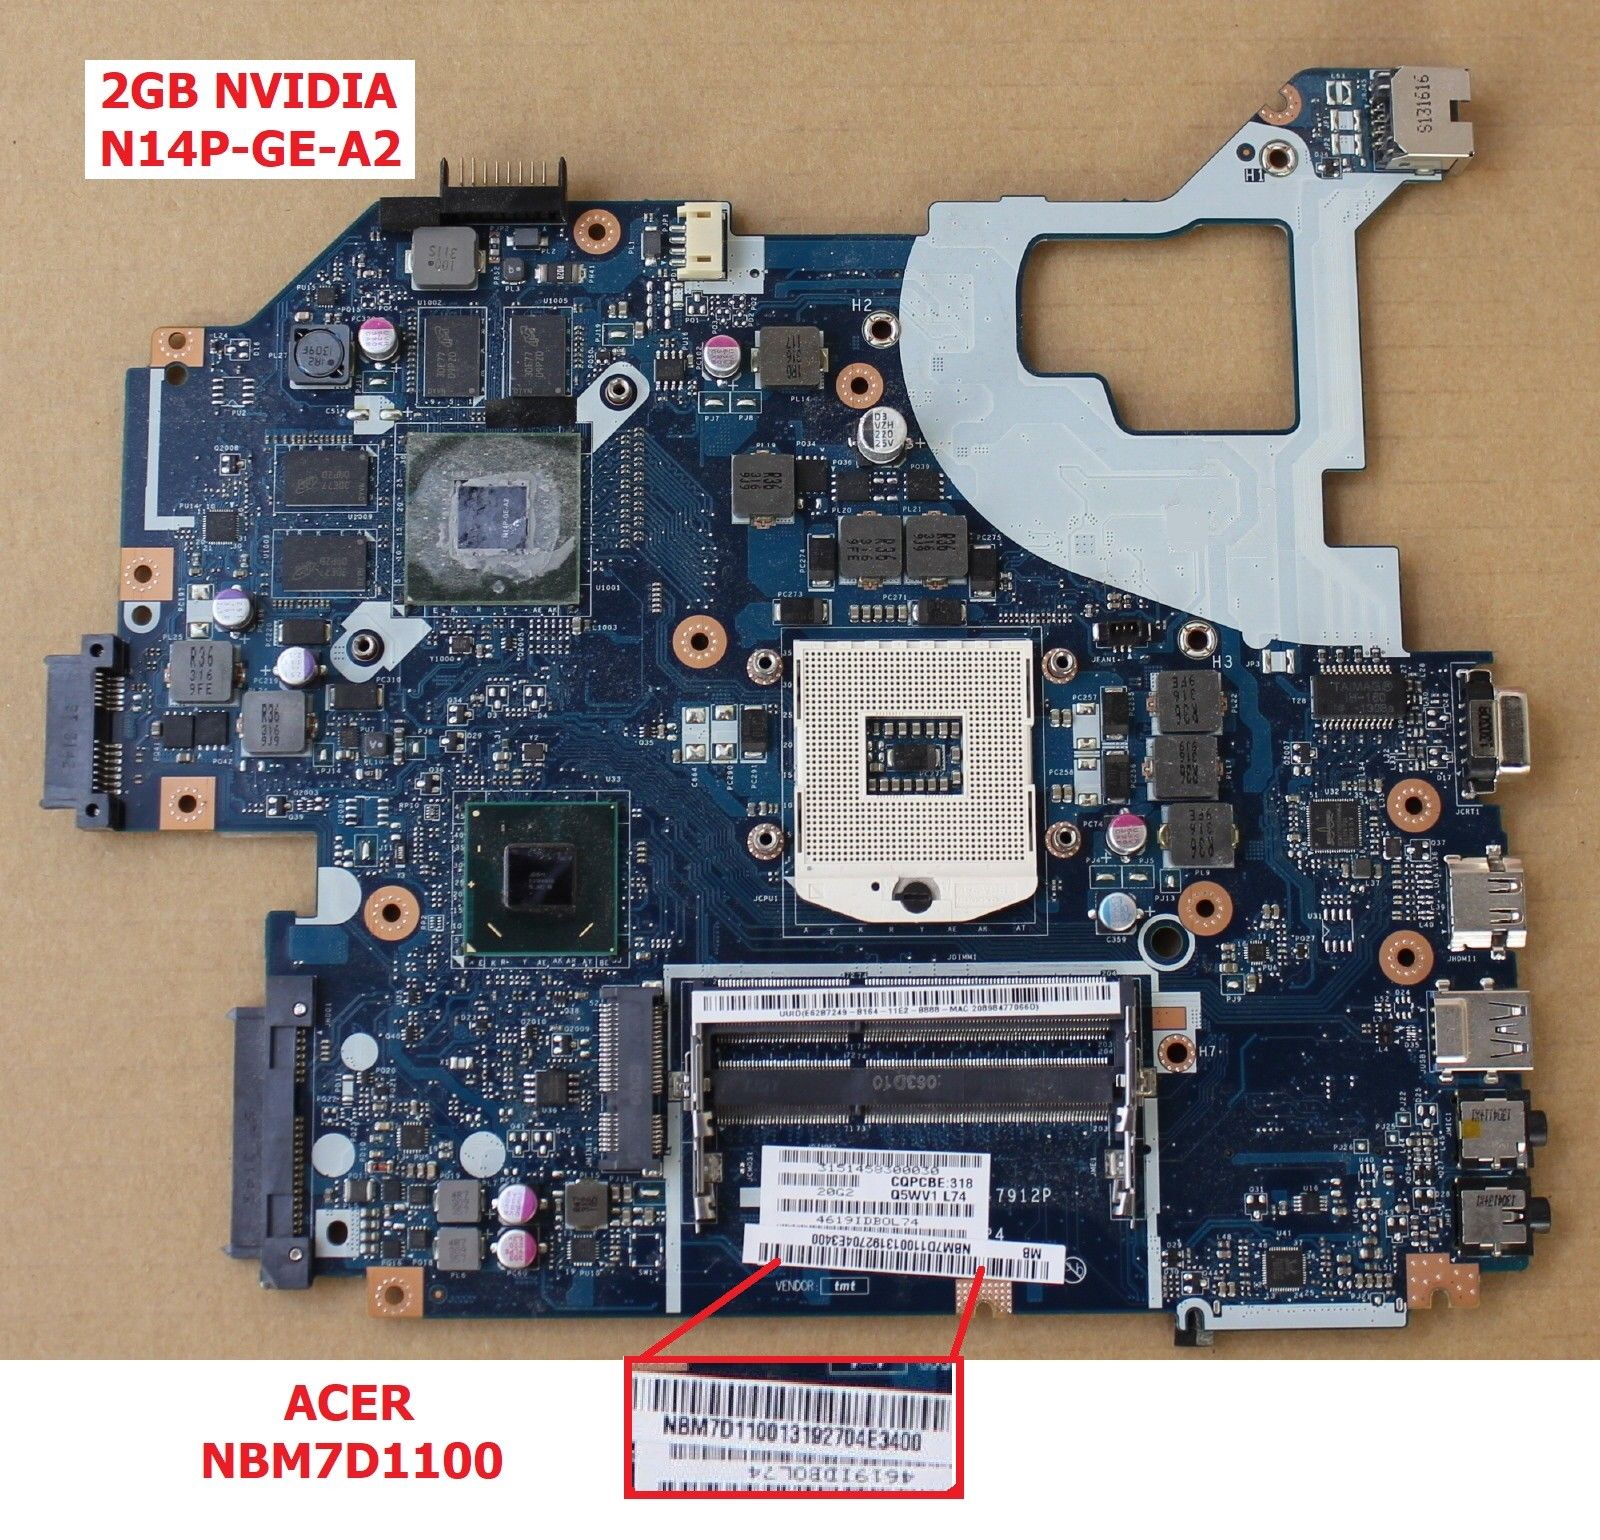 NBM7D11001 HM77 nVidia Motherboard for Acer Aspire V3-571G Laptop,Q5WV1 LA-7912P